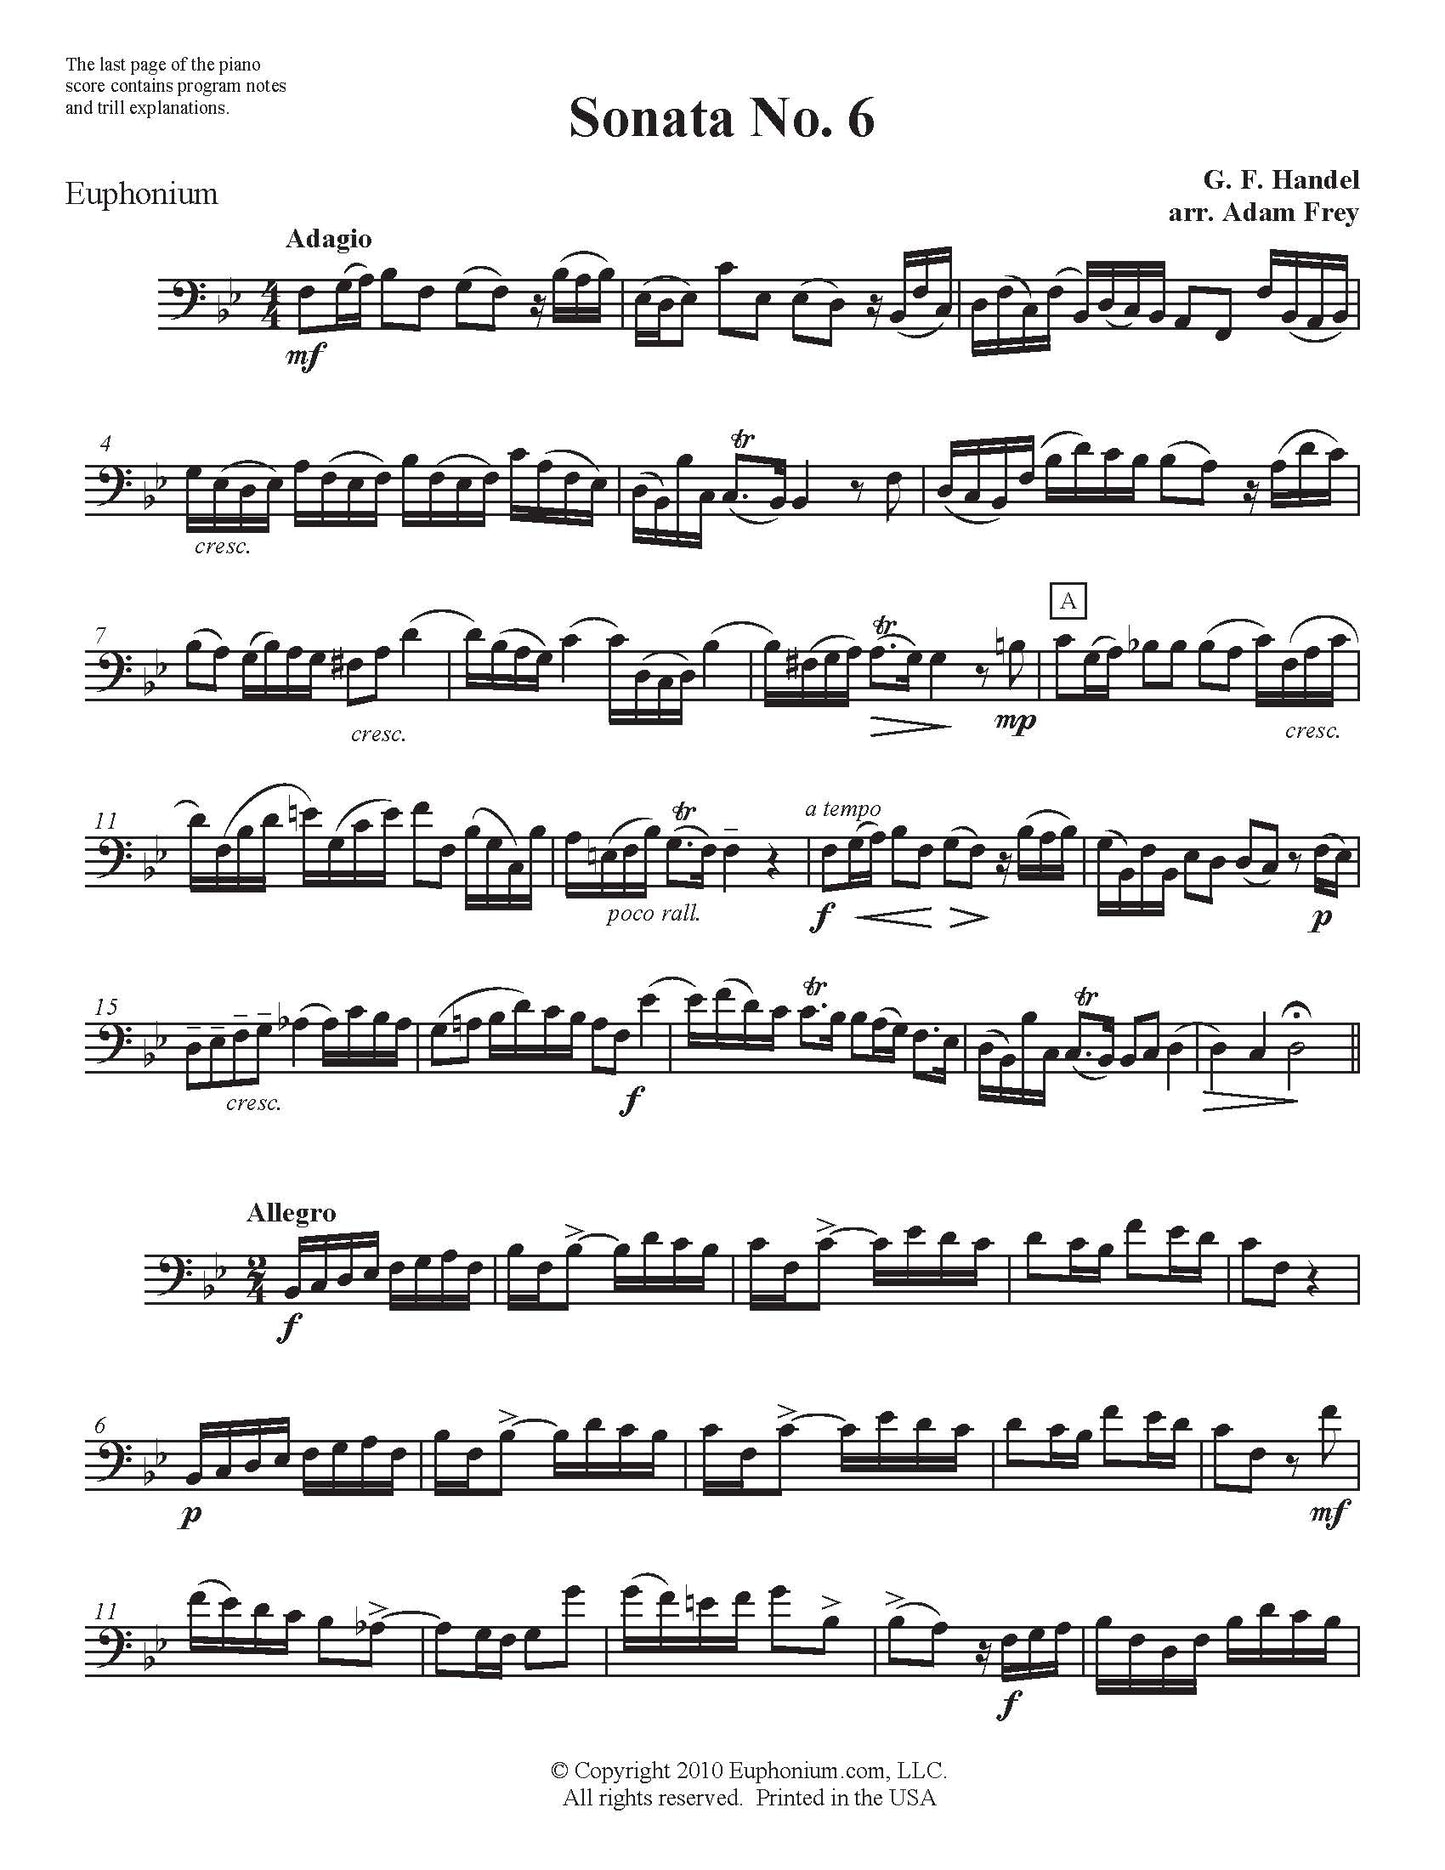 Handel arr. Frey - Sonata No. 6